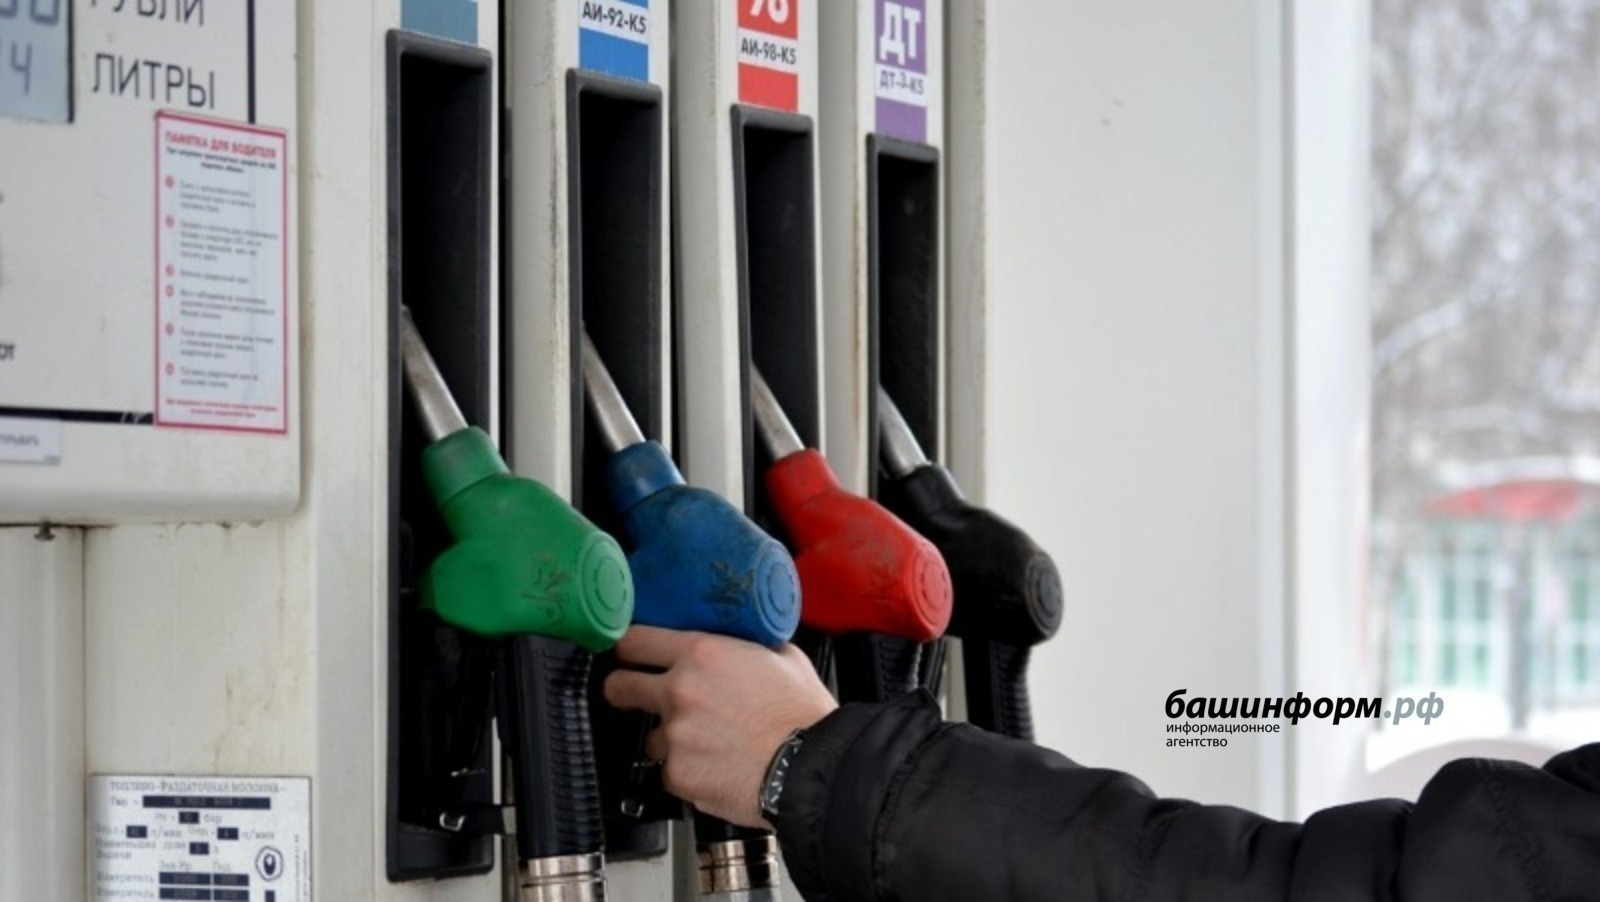 Цены на топливо на АЗС должны снизиться в ближайшее время – правительство